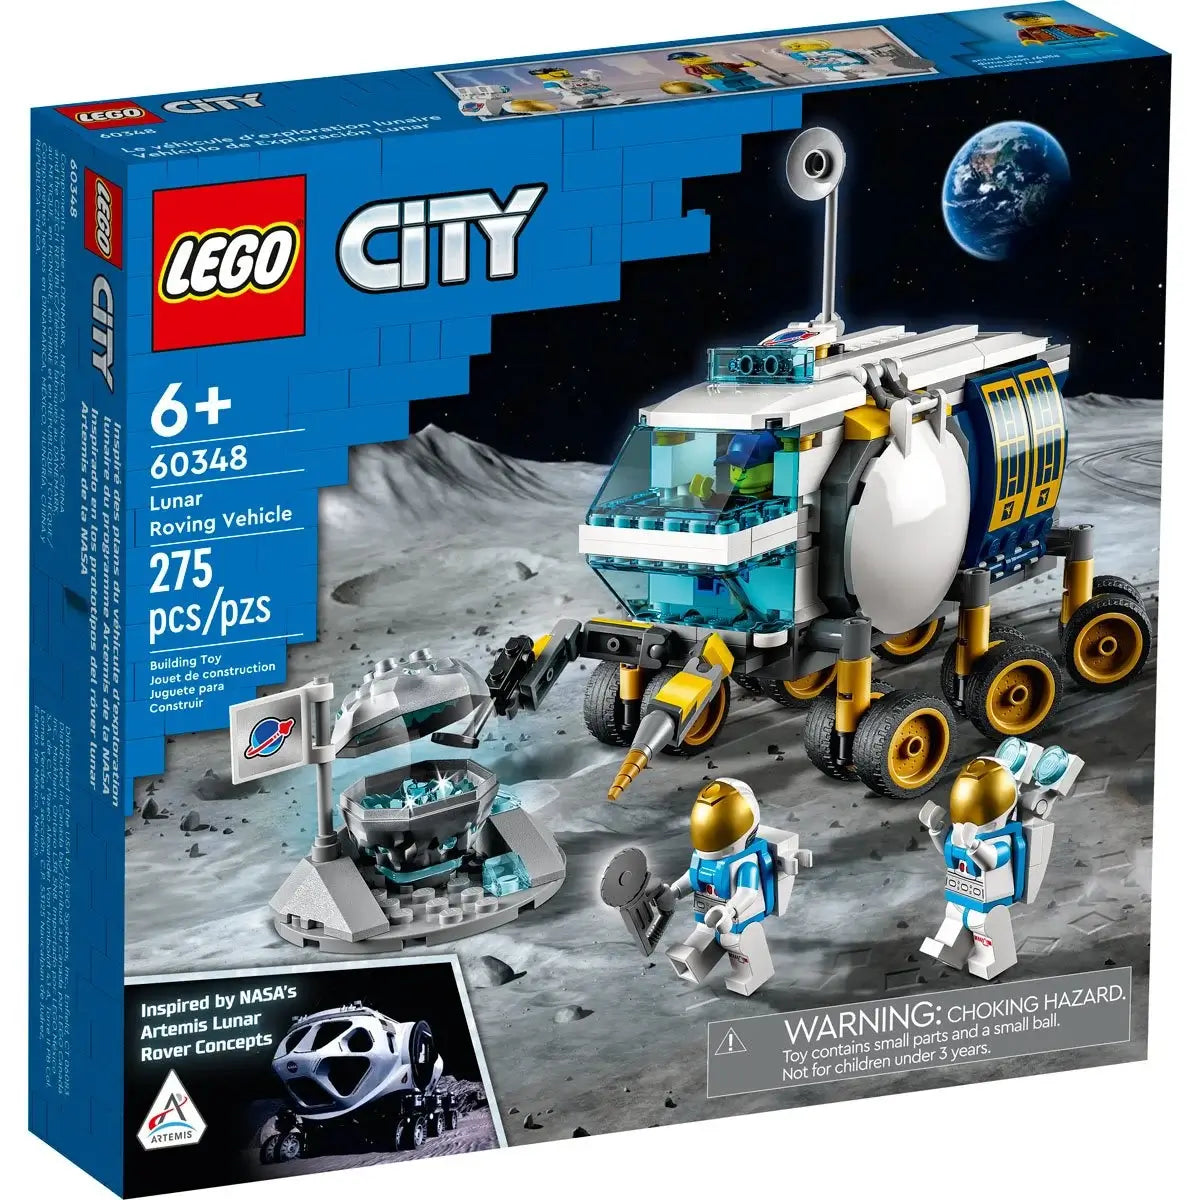 LEGO City Space Lunar Vehicle 275 Pc Building (60348)